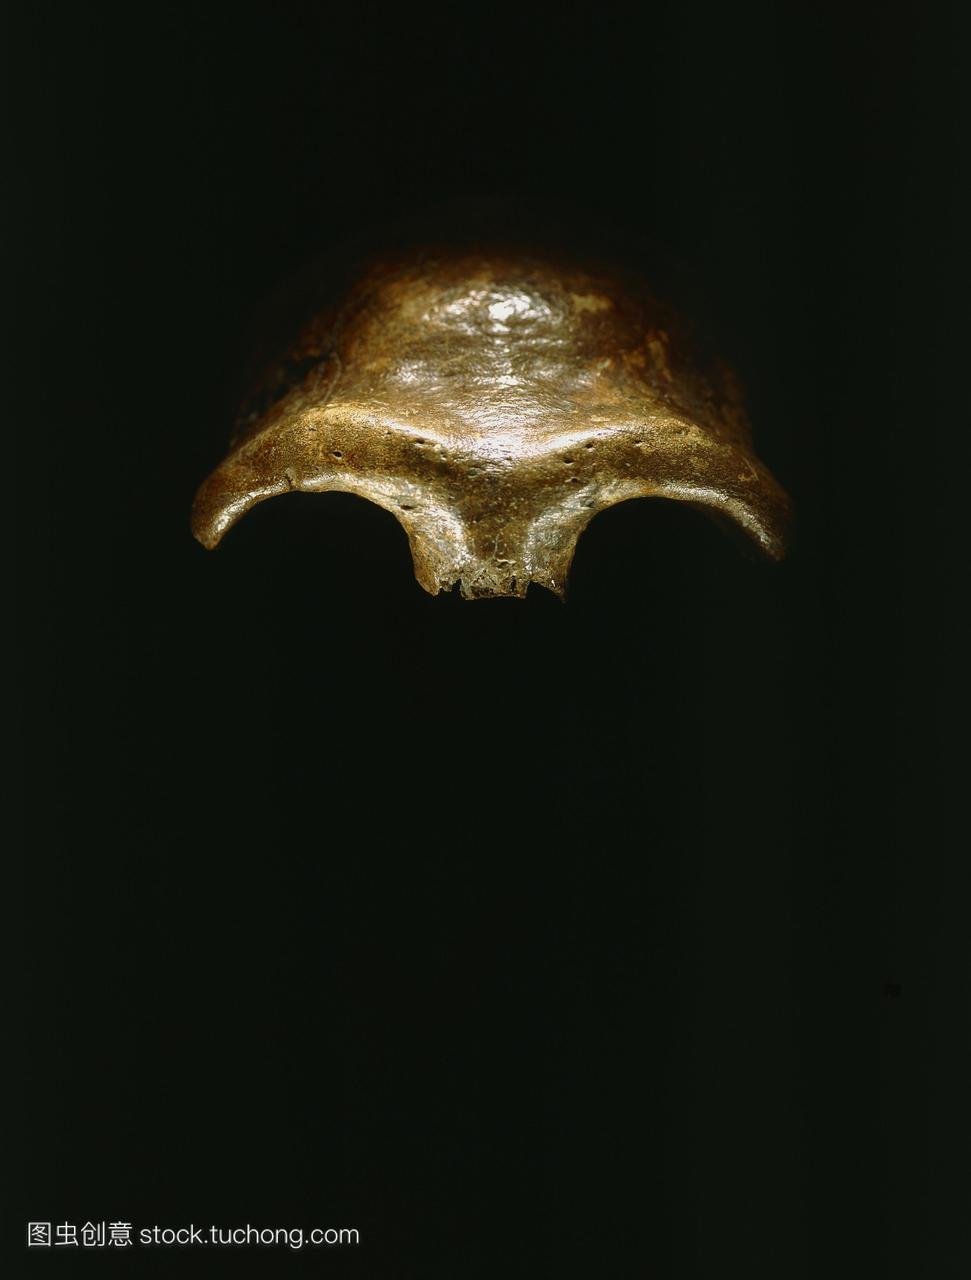 尼安德特人尼安德特人的头骨,在1857年在德国